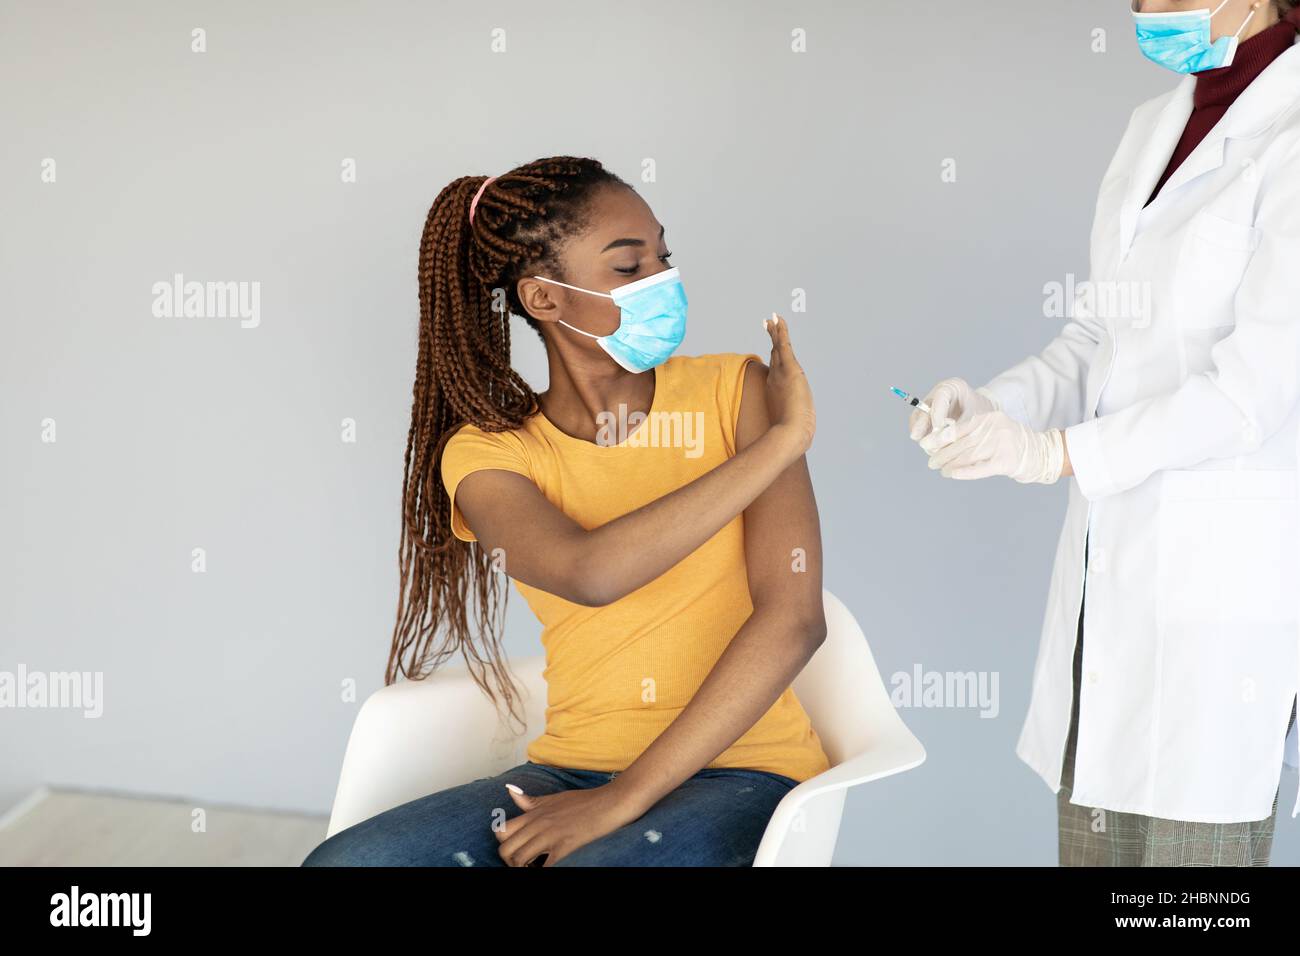 Giovane donna nera in maschera facciale usa e getta che impedisce al medico di fare l'iniezione di vaccino del coronavirus su sfondo grigio Foto Stock